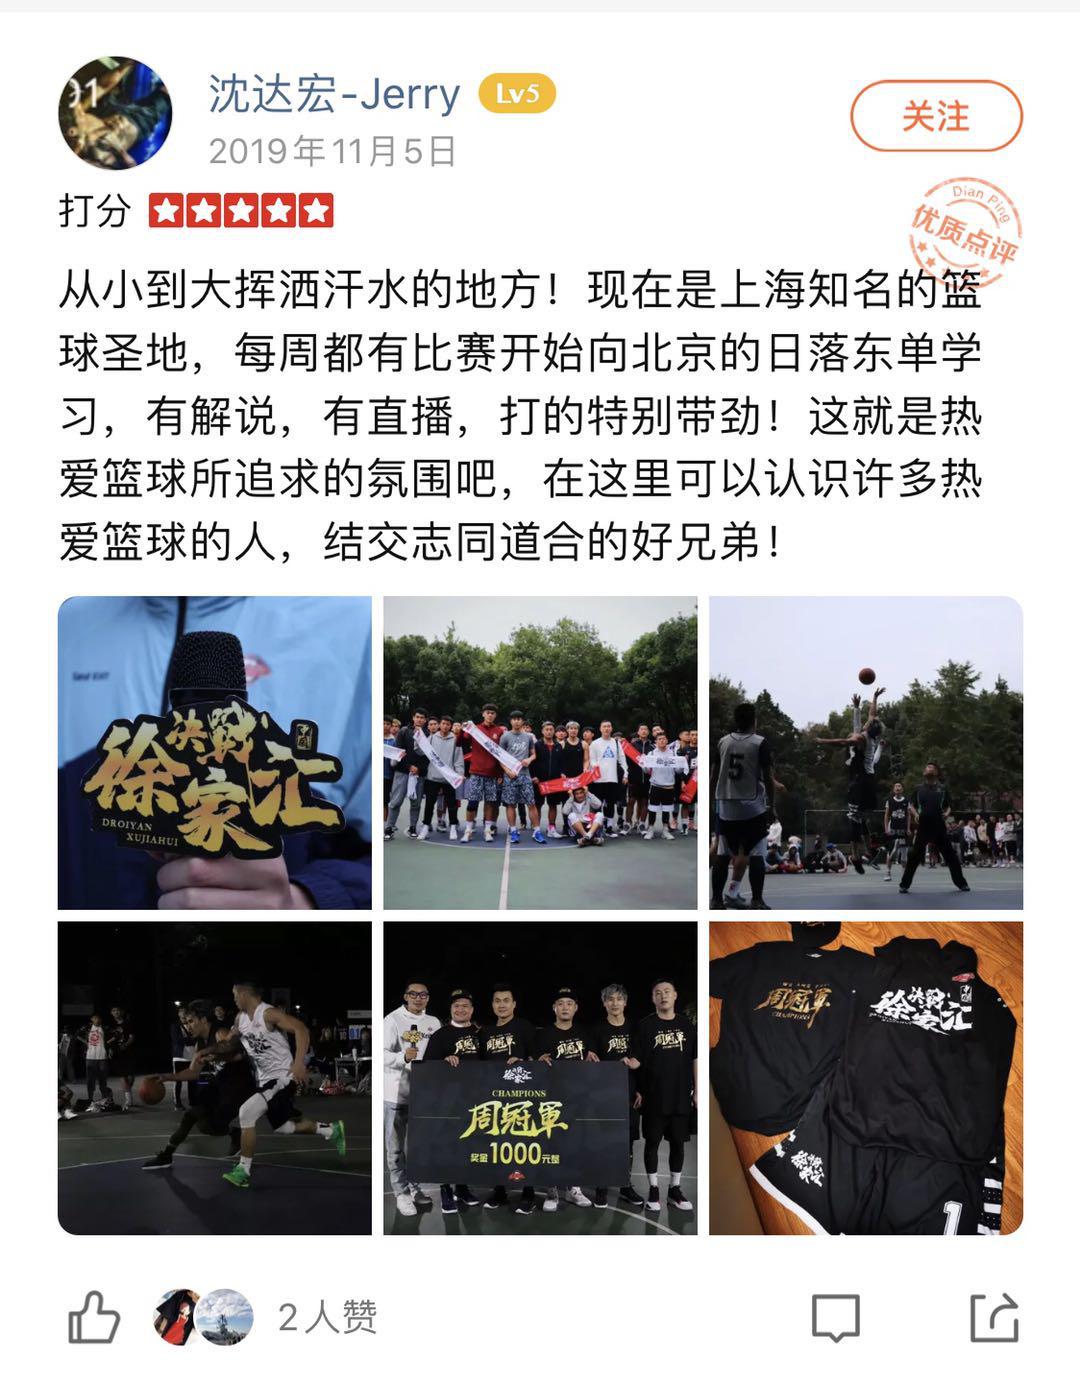 这一上海最著名的篮球圣地, 为啥偏要加上这么一扇“门”?(2)